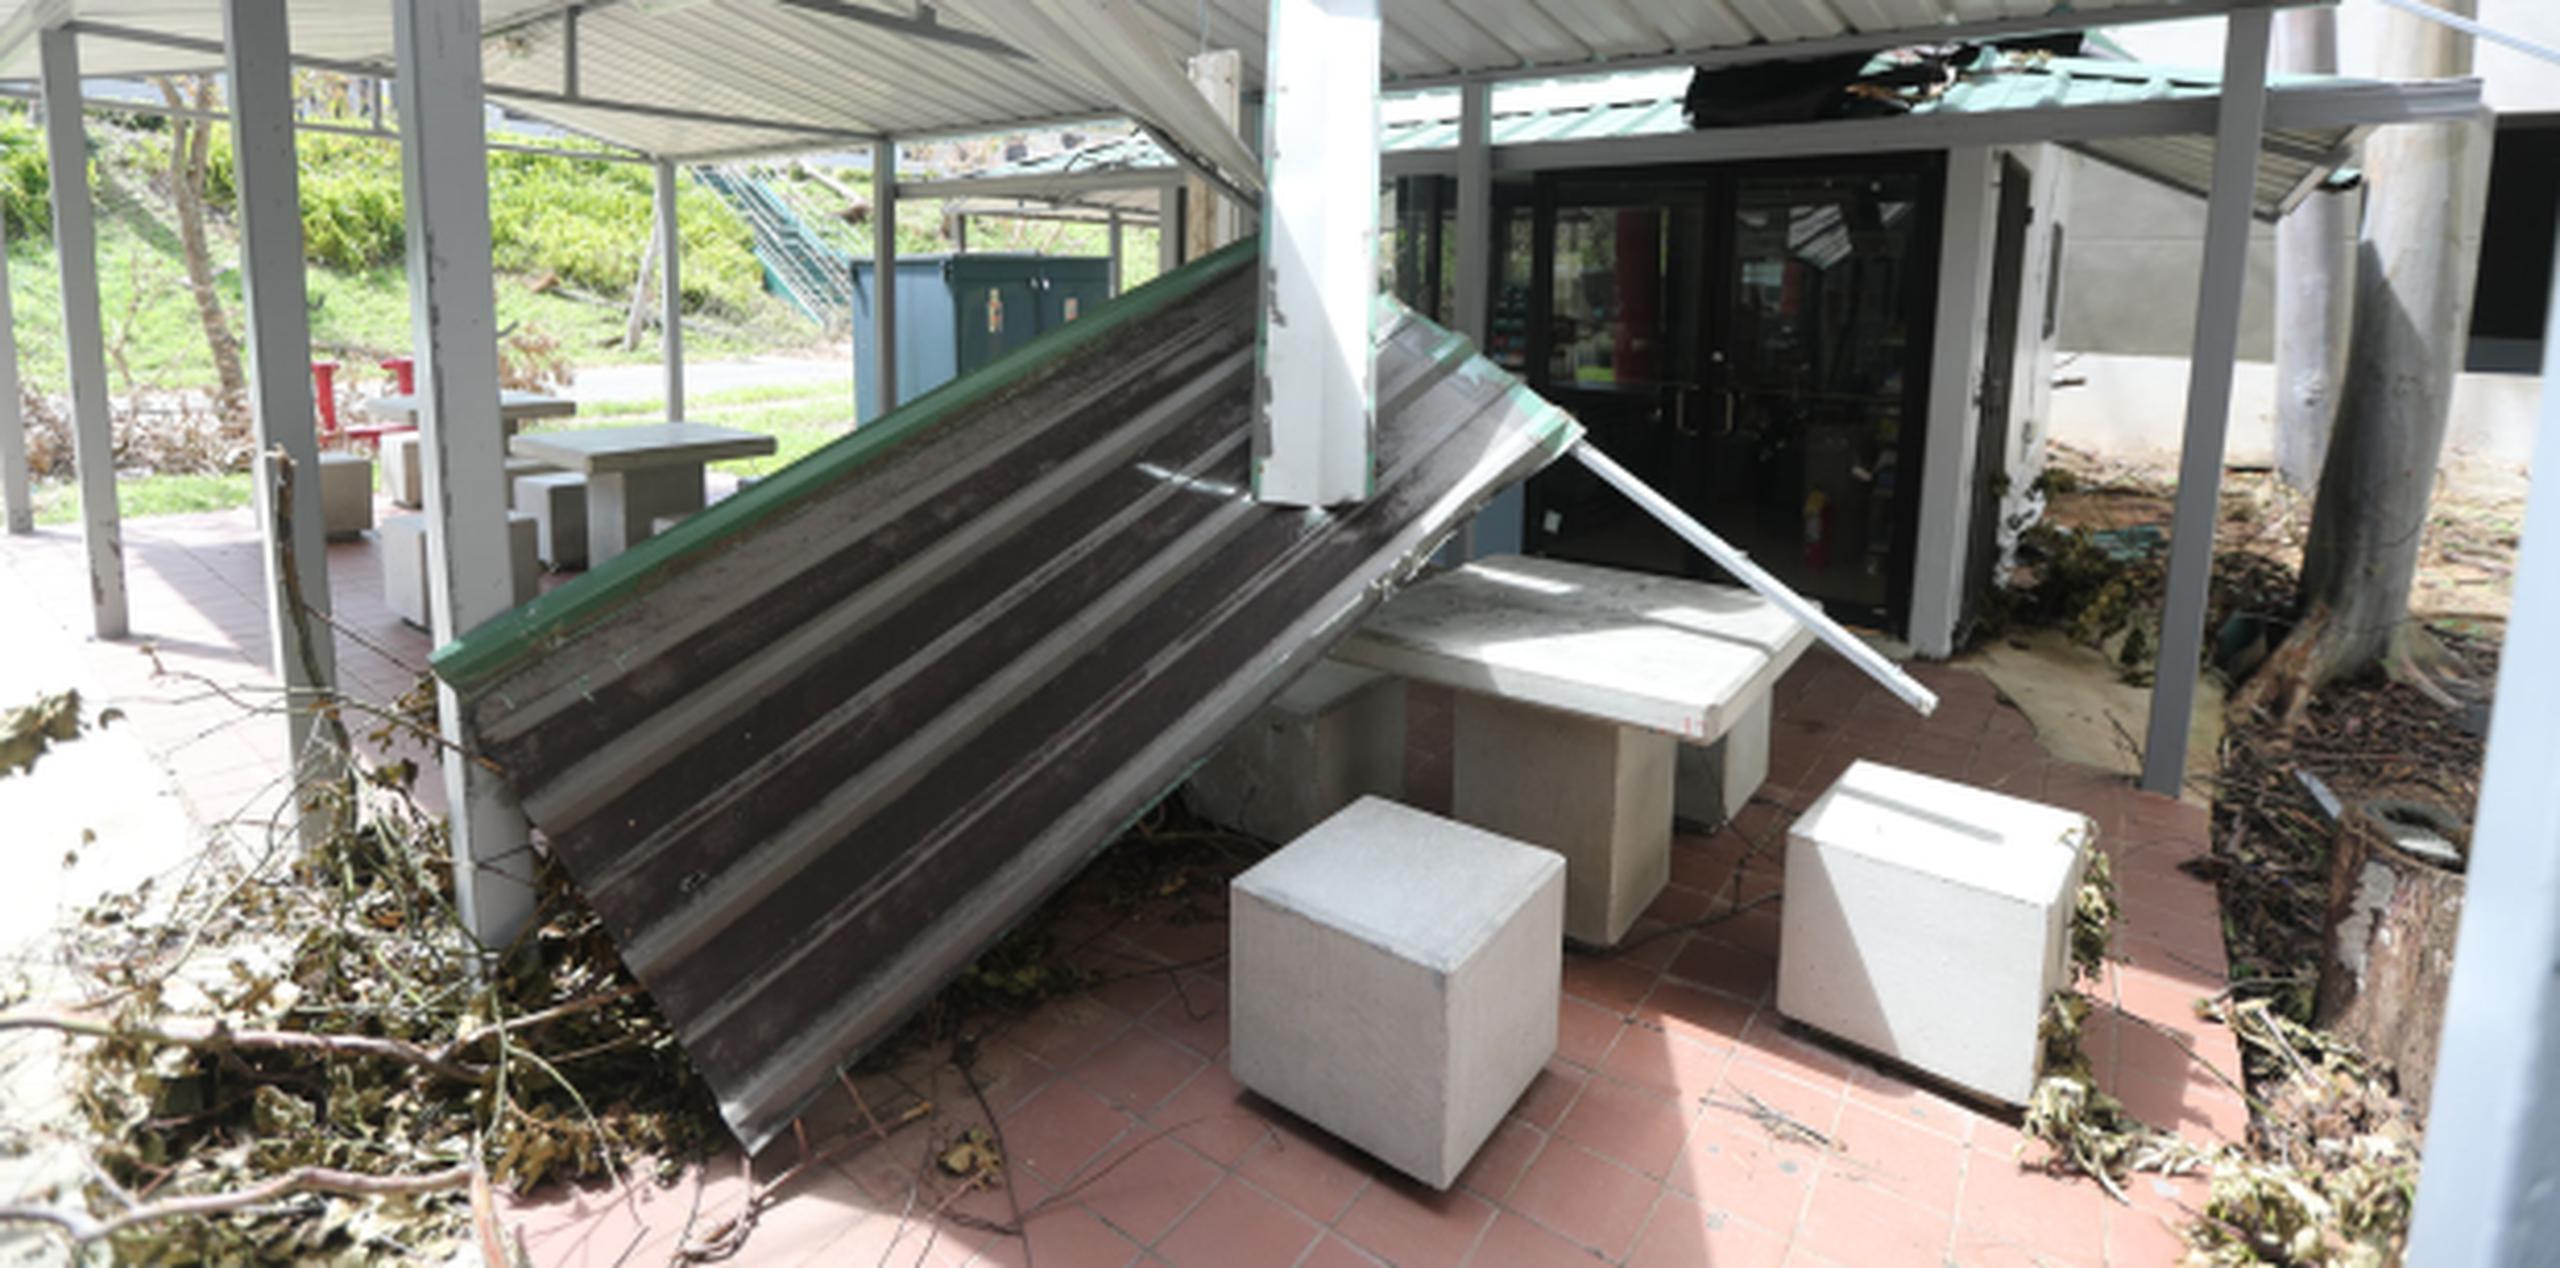 Vistazo a parte de los daños en el recinto de Carolina de la UPR causados por María. (JUAN.MARTINEZ@GFRMEDIA.COM)